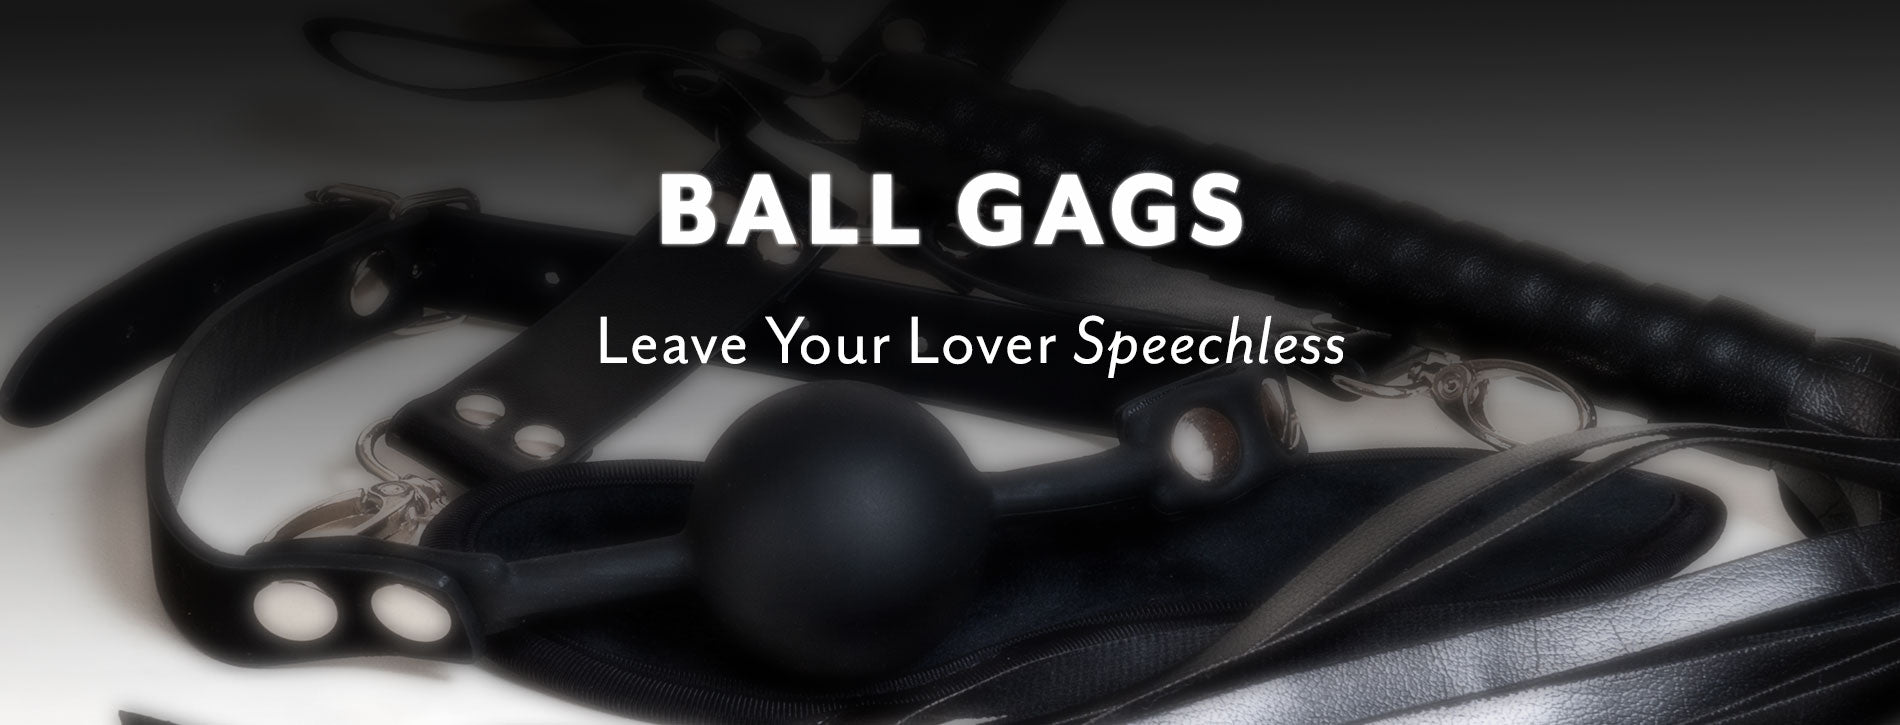 Luxury Bondage Ball Gag on Black Ground